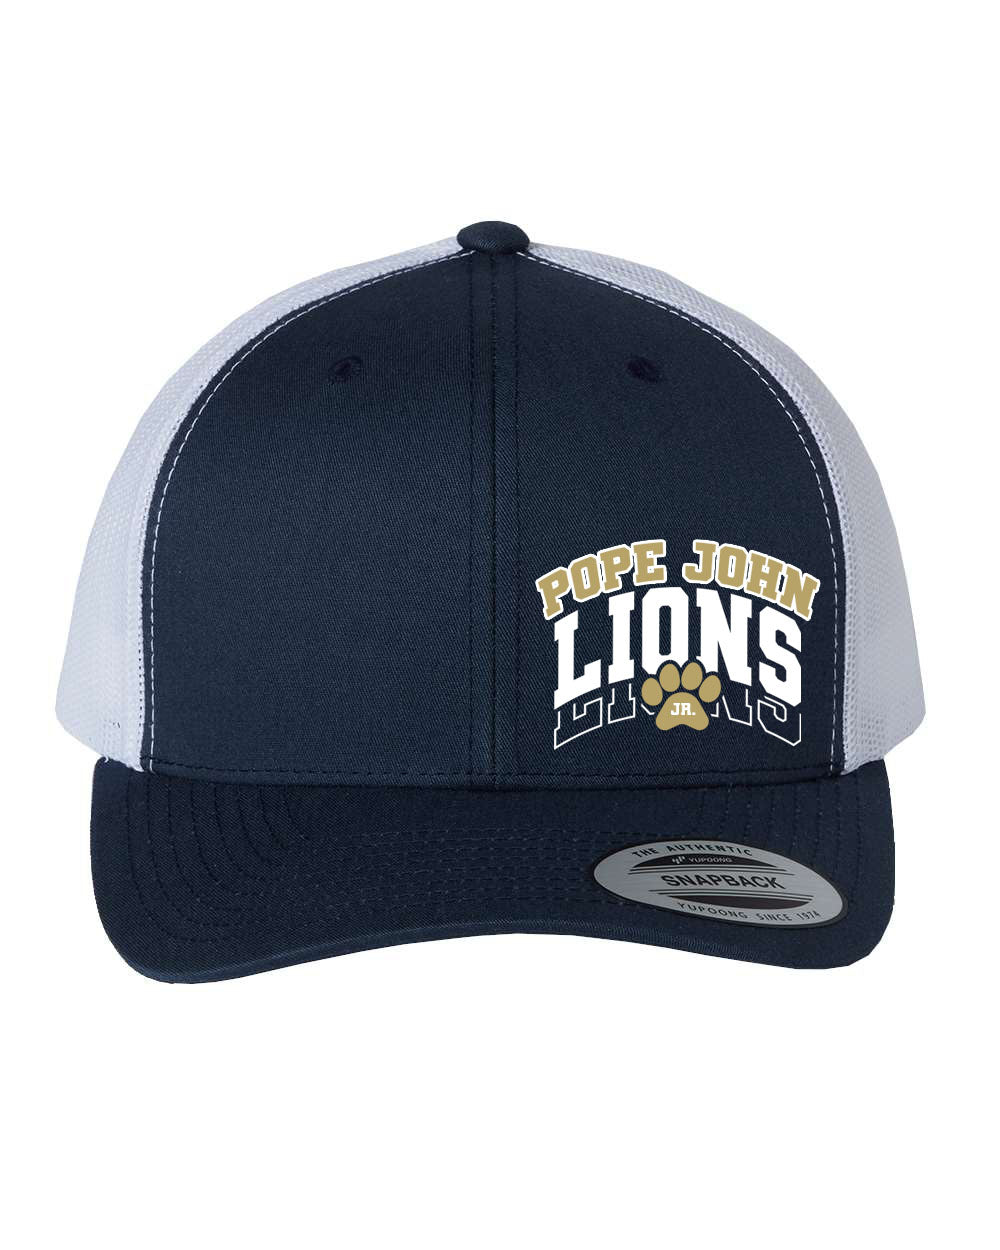 Lions Cheer design 1 Trucker Hat